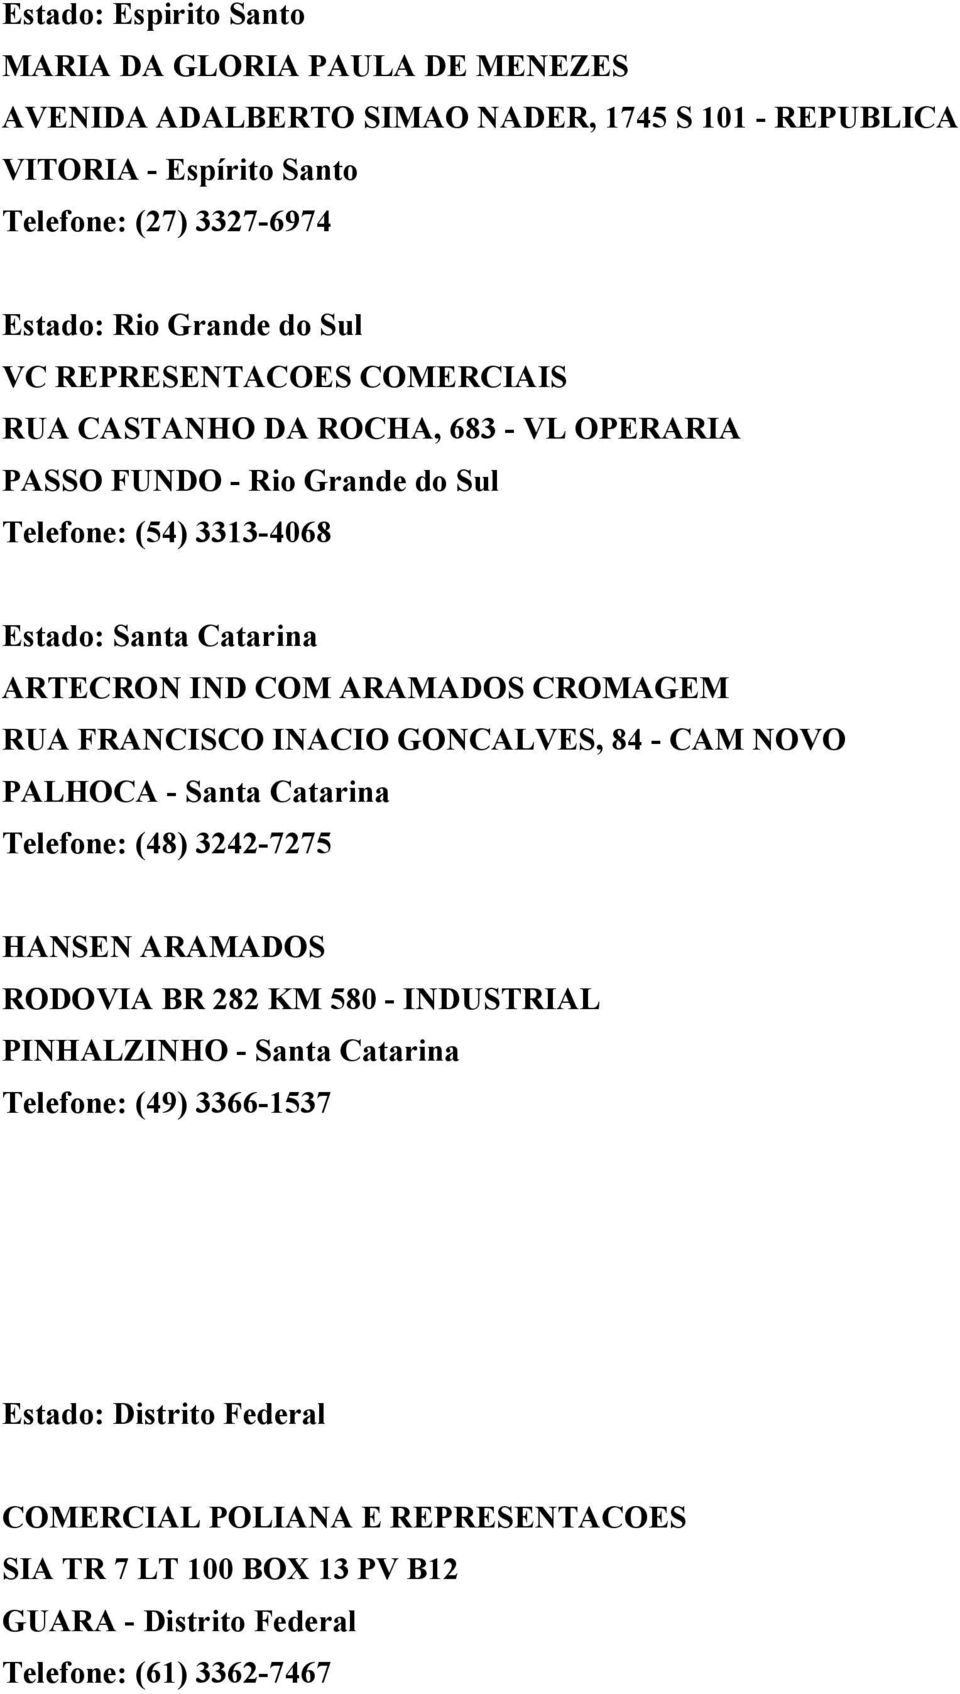 COM ARAMADOS CROMAGEM RUA FRANCISCO INACIO GONCALVES, 84 - CAM NOVO PALHOCA - Santa Catarina Telefone: (48) 3242-7275 HANSEN ARAMADOS RODOVIA BR 282 KM 580 - INDUSTRIAL